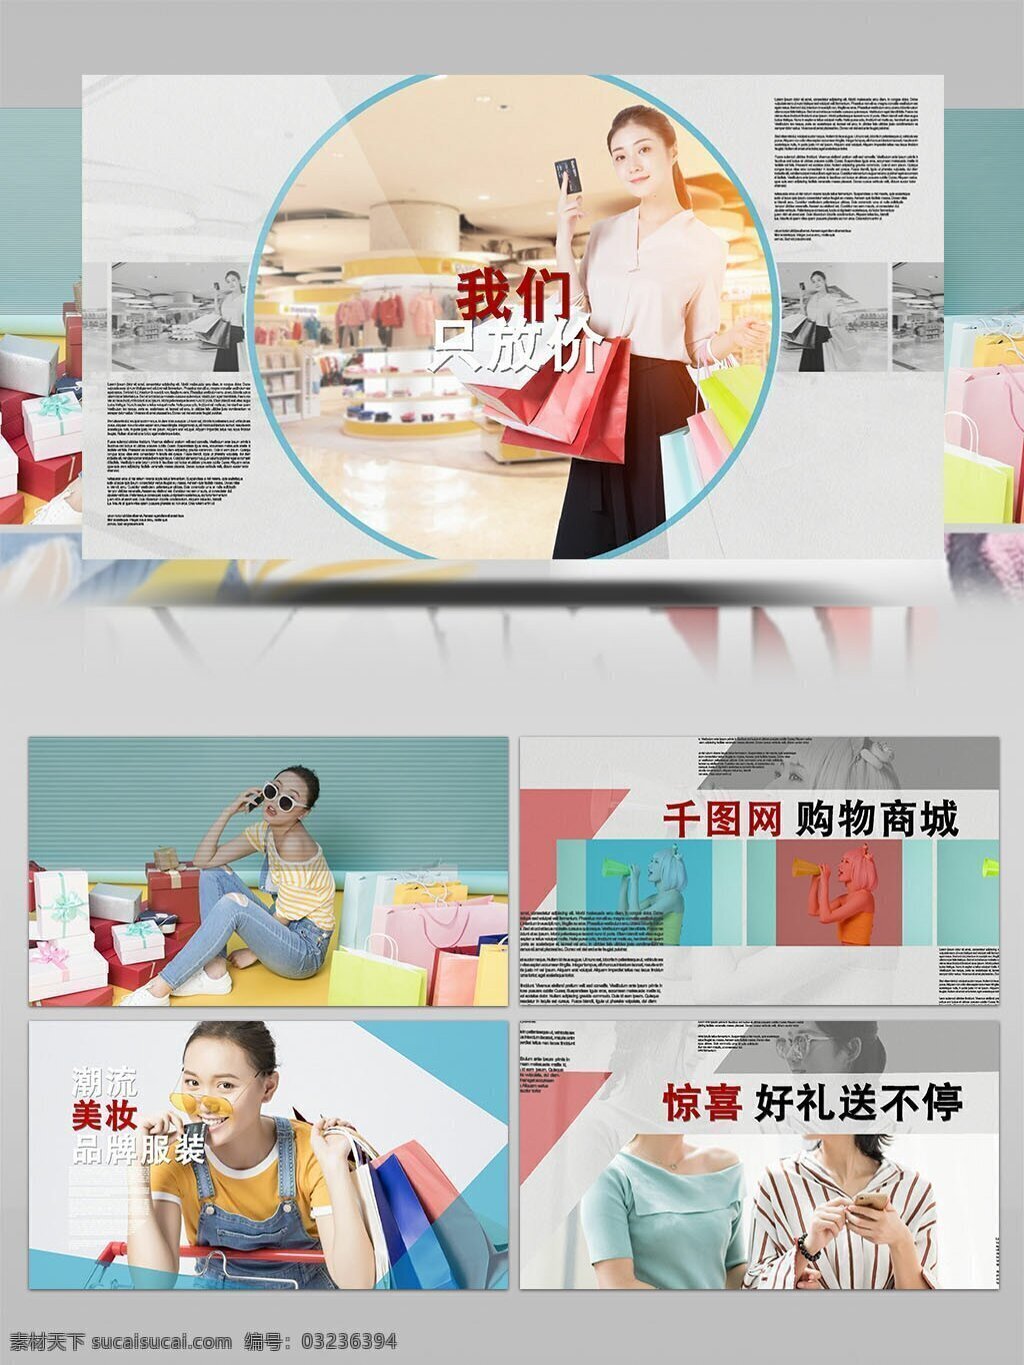 简洁 电商 商城 促销 宣传片 ae 模板 企业 宣传 商品 模特 展示